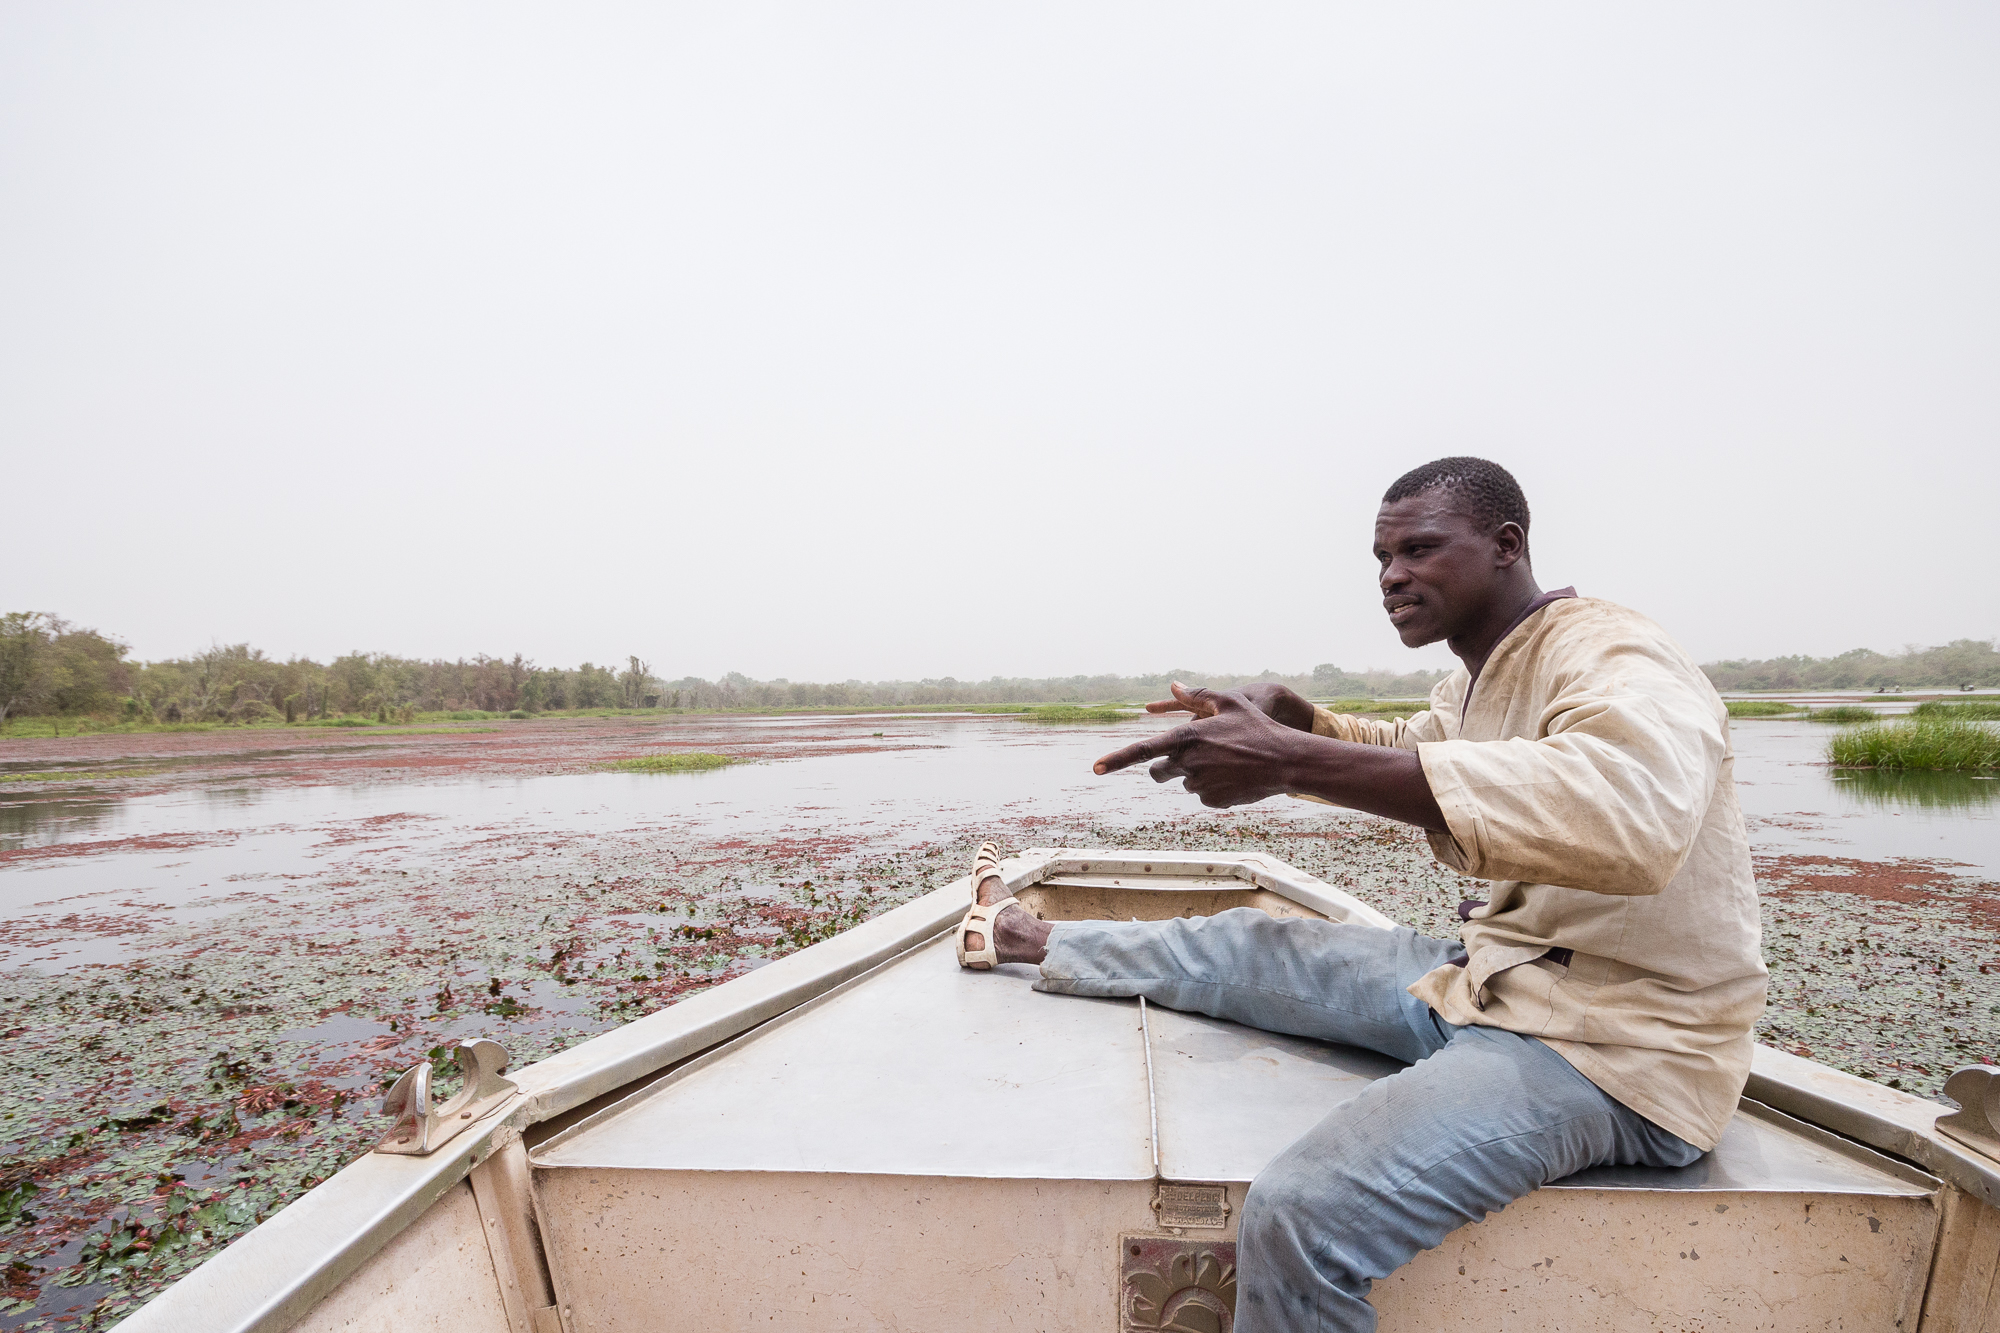 Homme en pleine discussion assis à l'avant d'une barque sur la mare de Bala, Burkina Faso